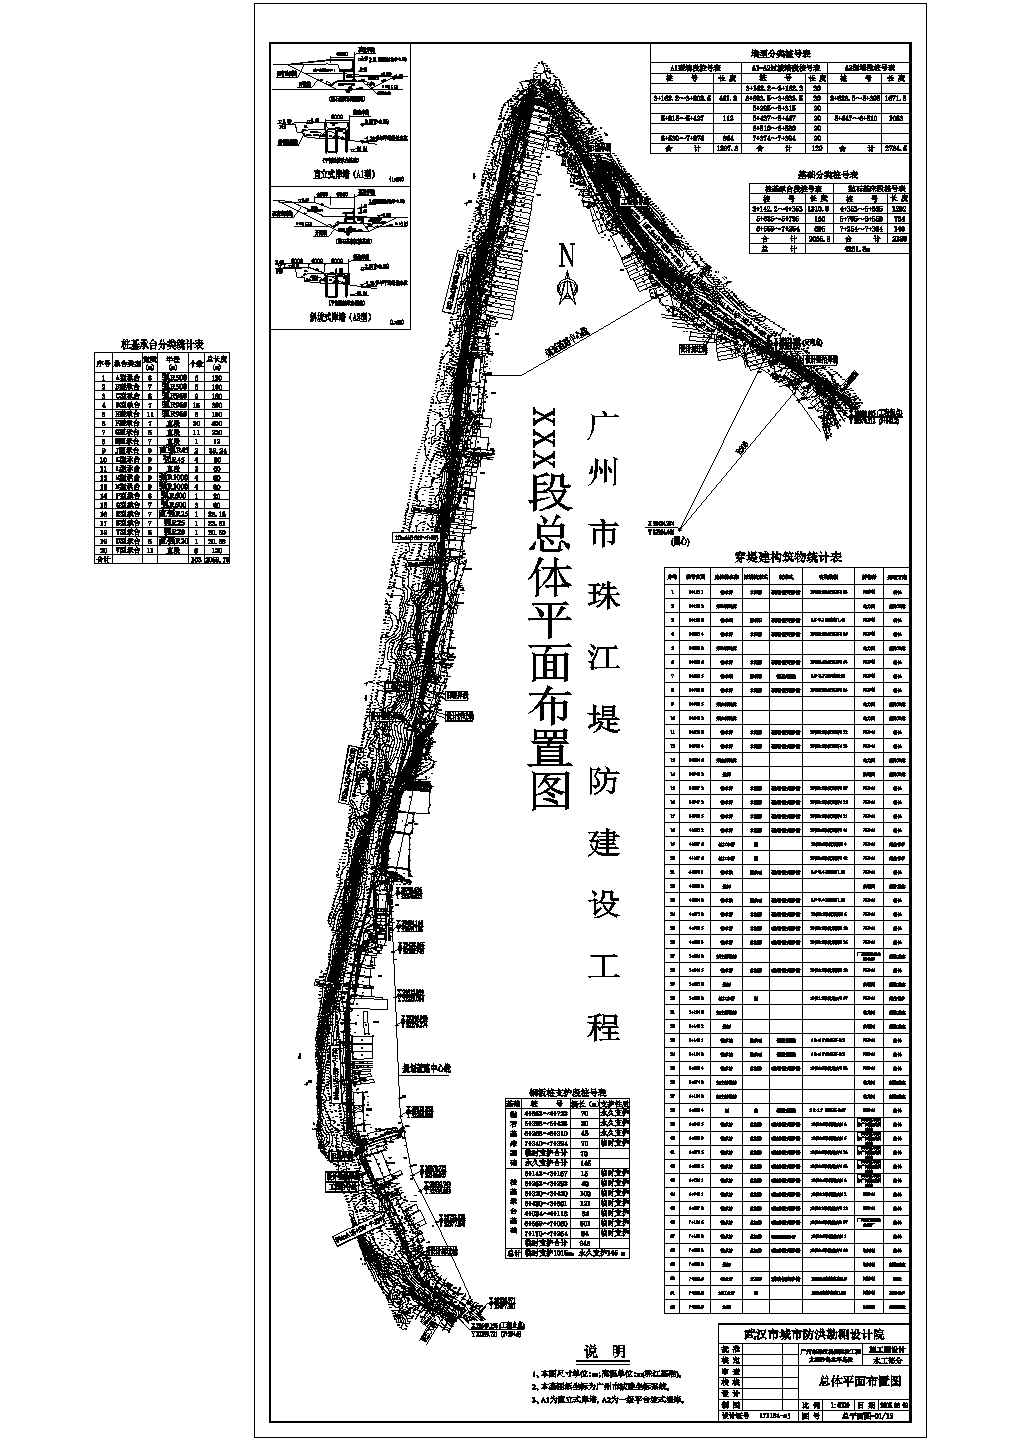 广州市珠江堤防建设工程某段总体平面布置图